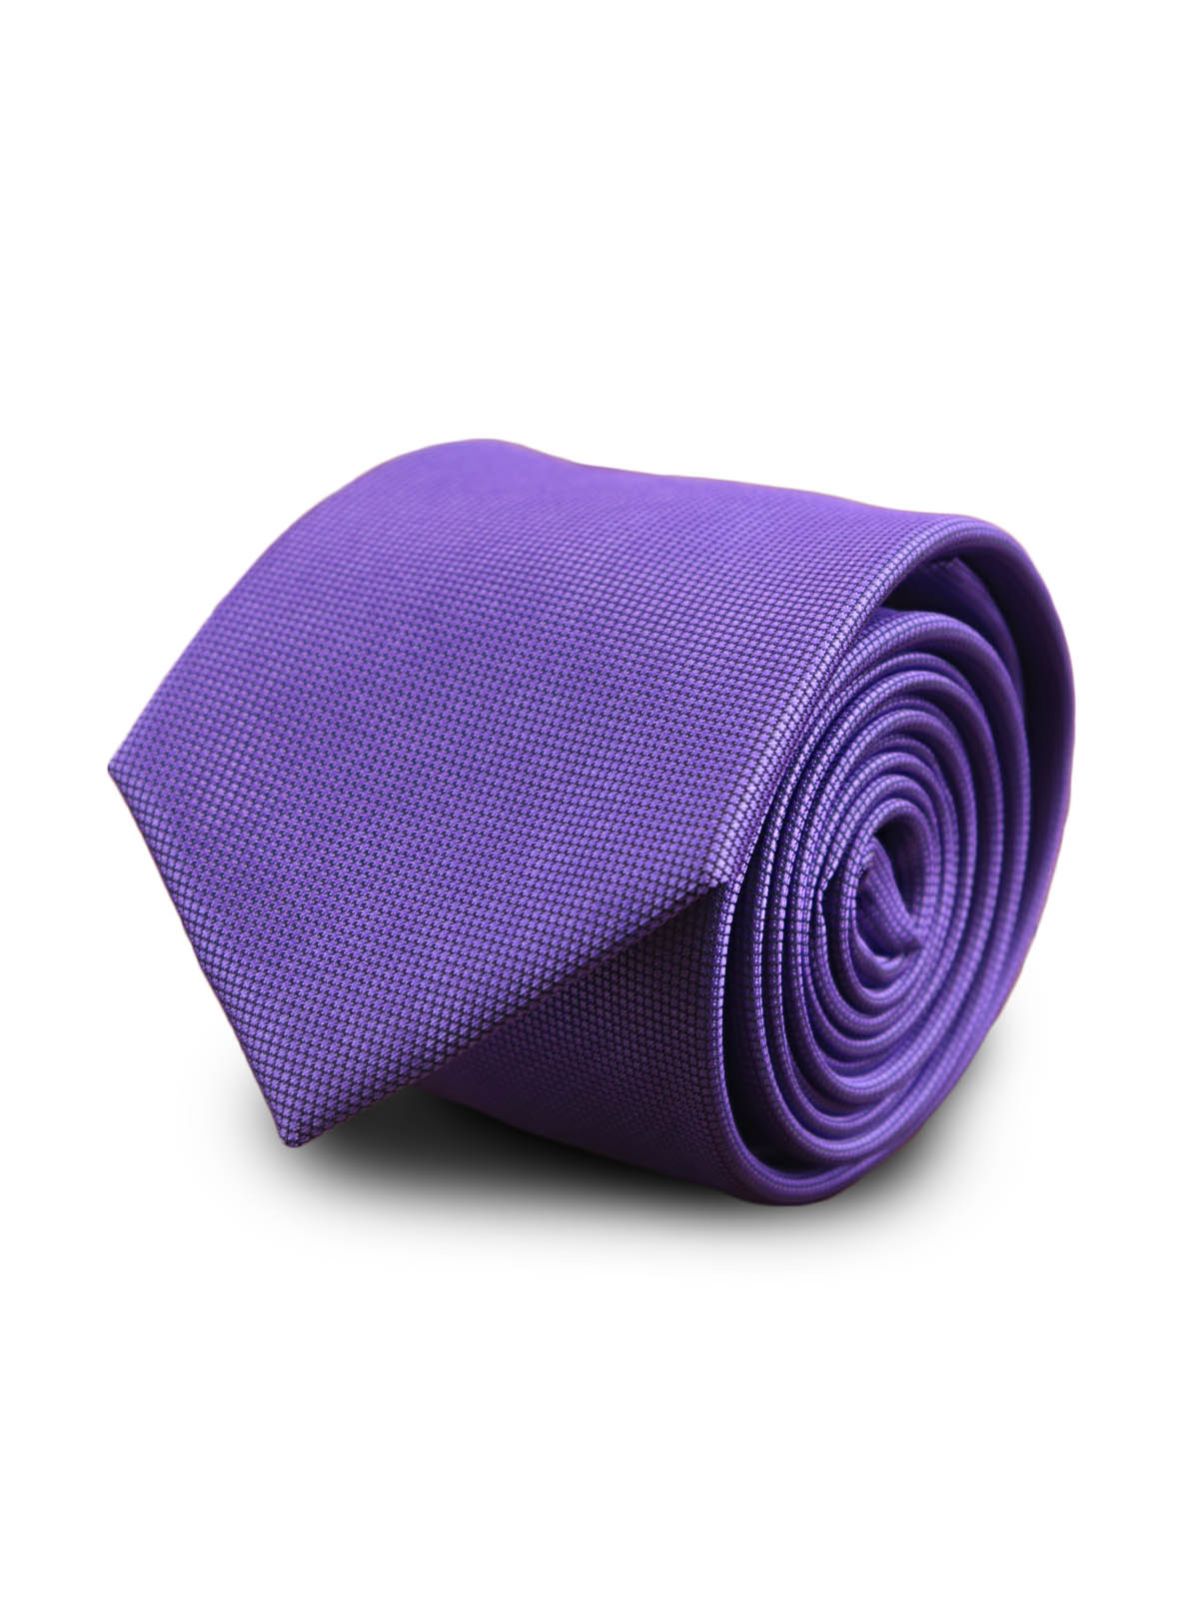 Галстук широкий фиолетовый с клеточной текстурой описание: Фасон - Широкий галстук, Материал - Микрофибра, Цвет - Фиолетовый, Размер - 7 см х 140 см, Страна производства - Турция.